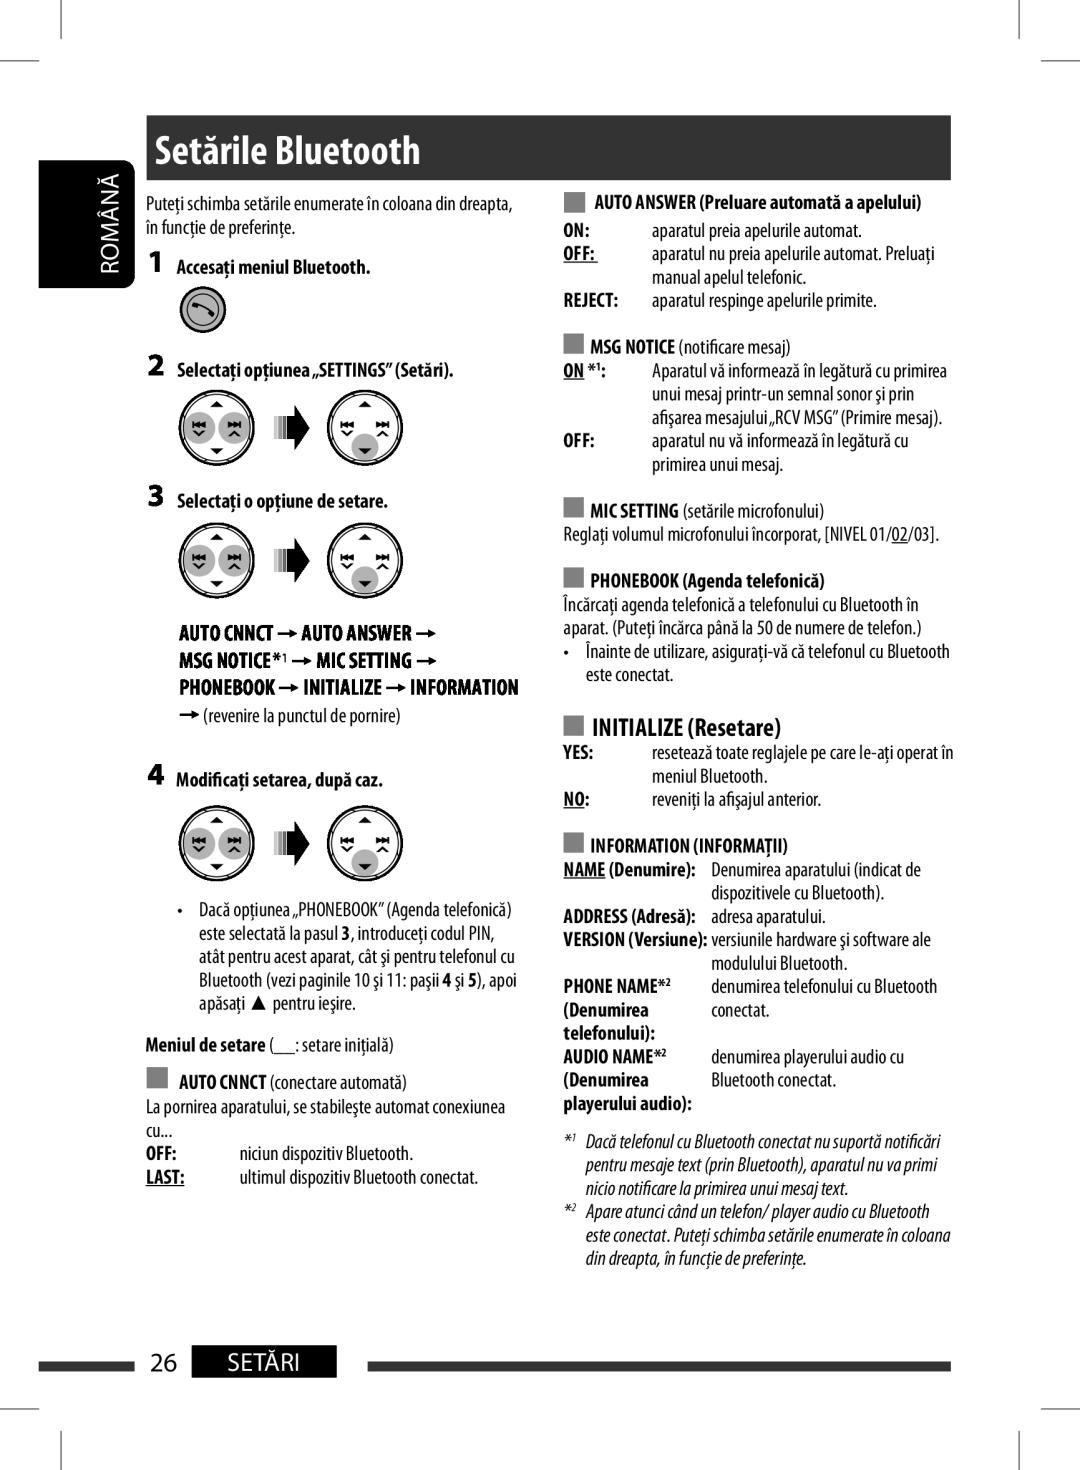 JVC KD-BT11 manual 26SETĂRI, BluetoothSetările Blusetoothtings, ON*1, Name, Română 